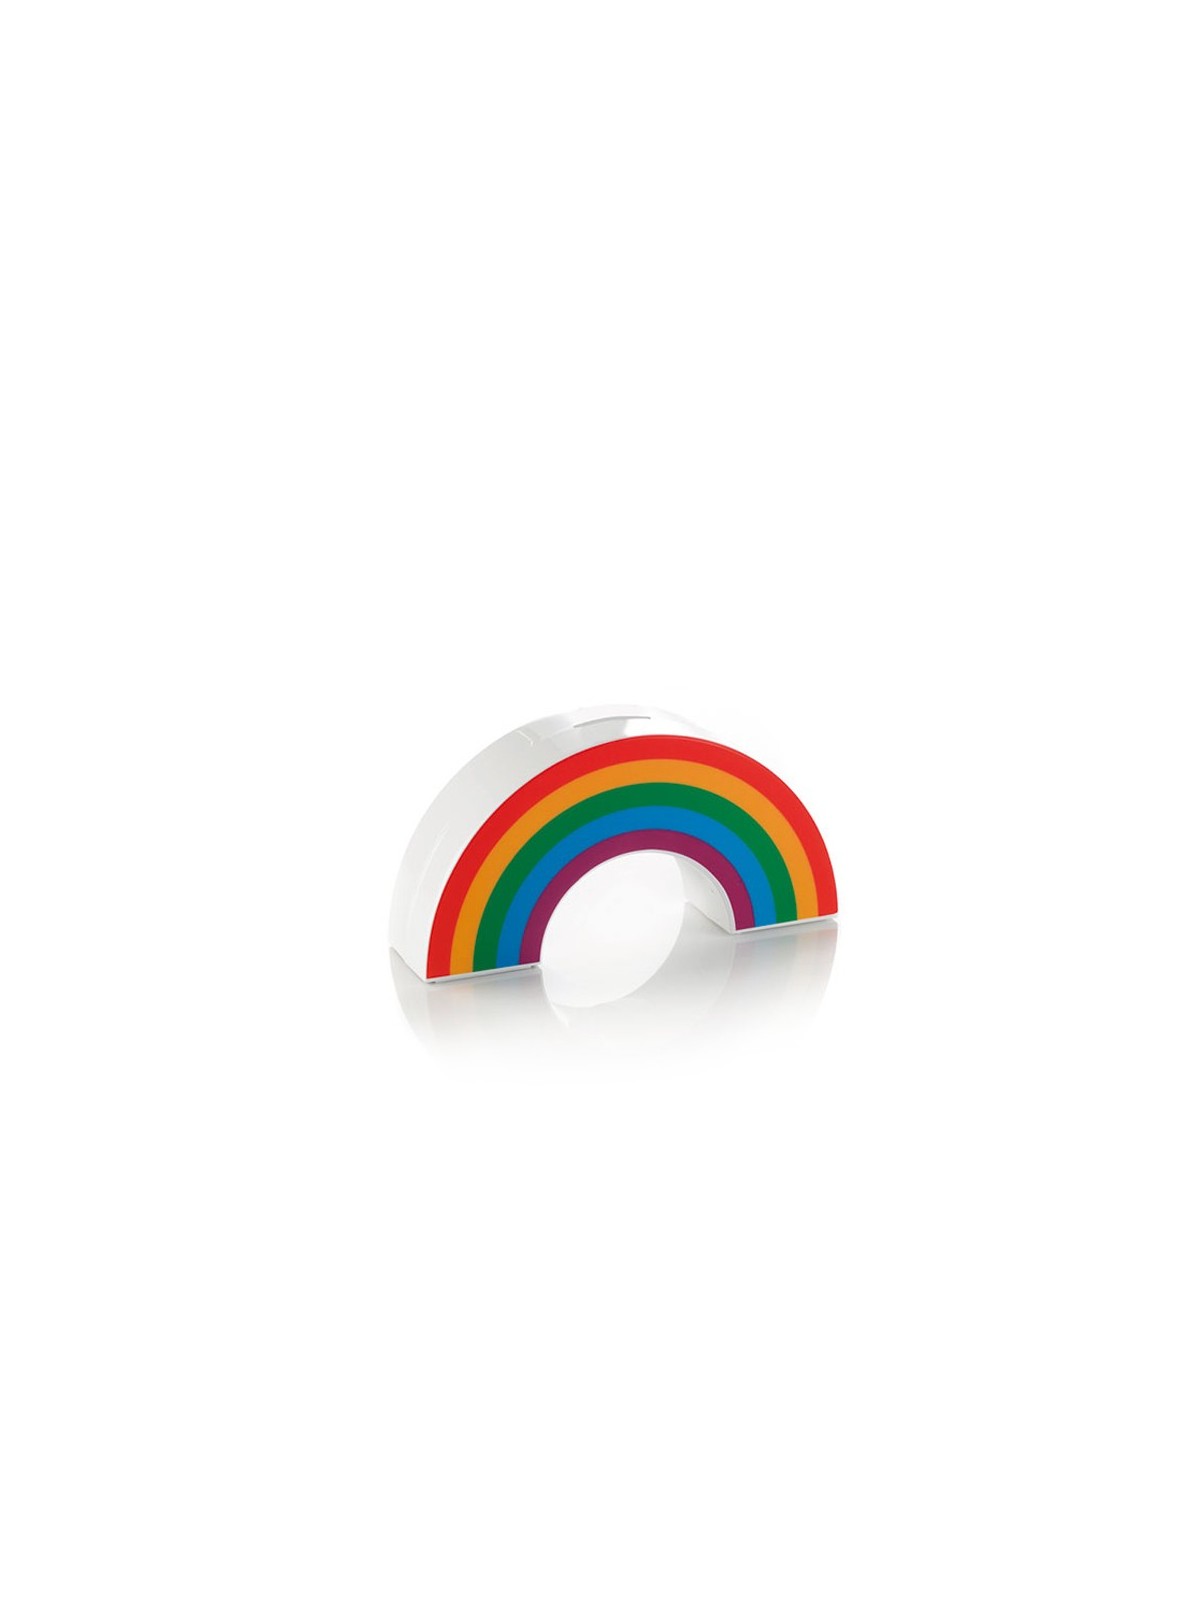 77-007 Tirelire rainbow personnalisé